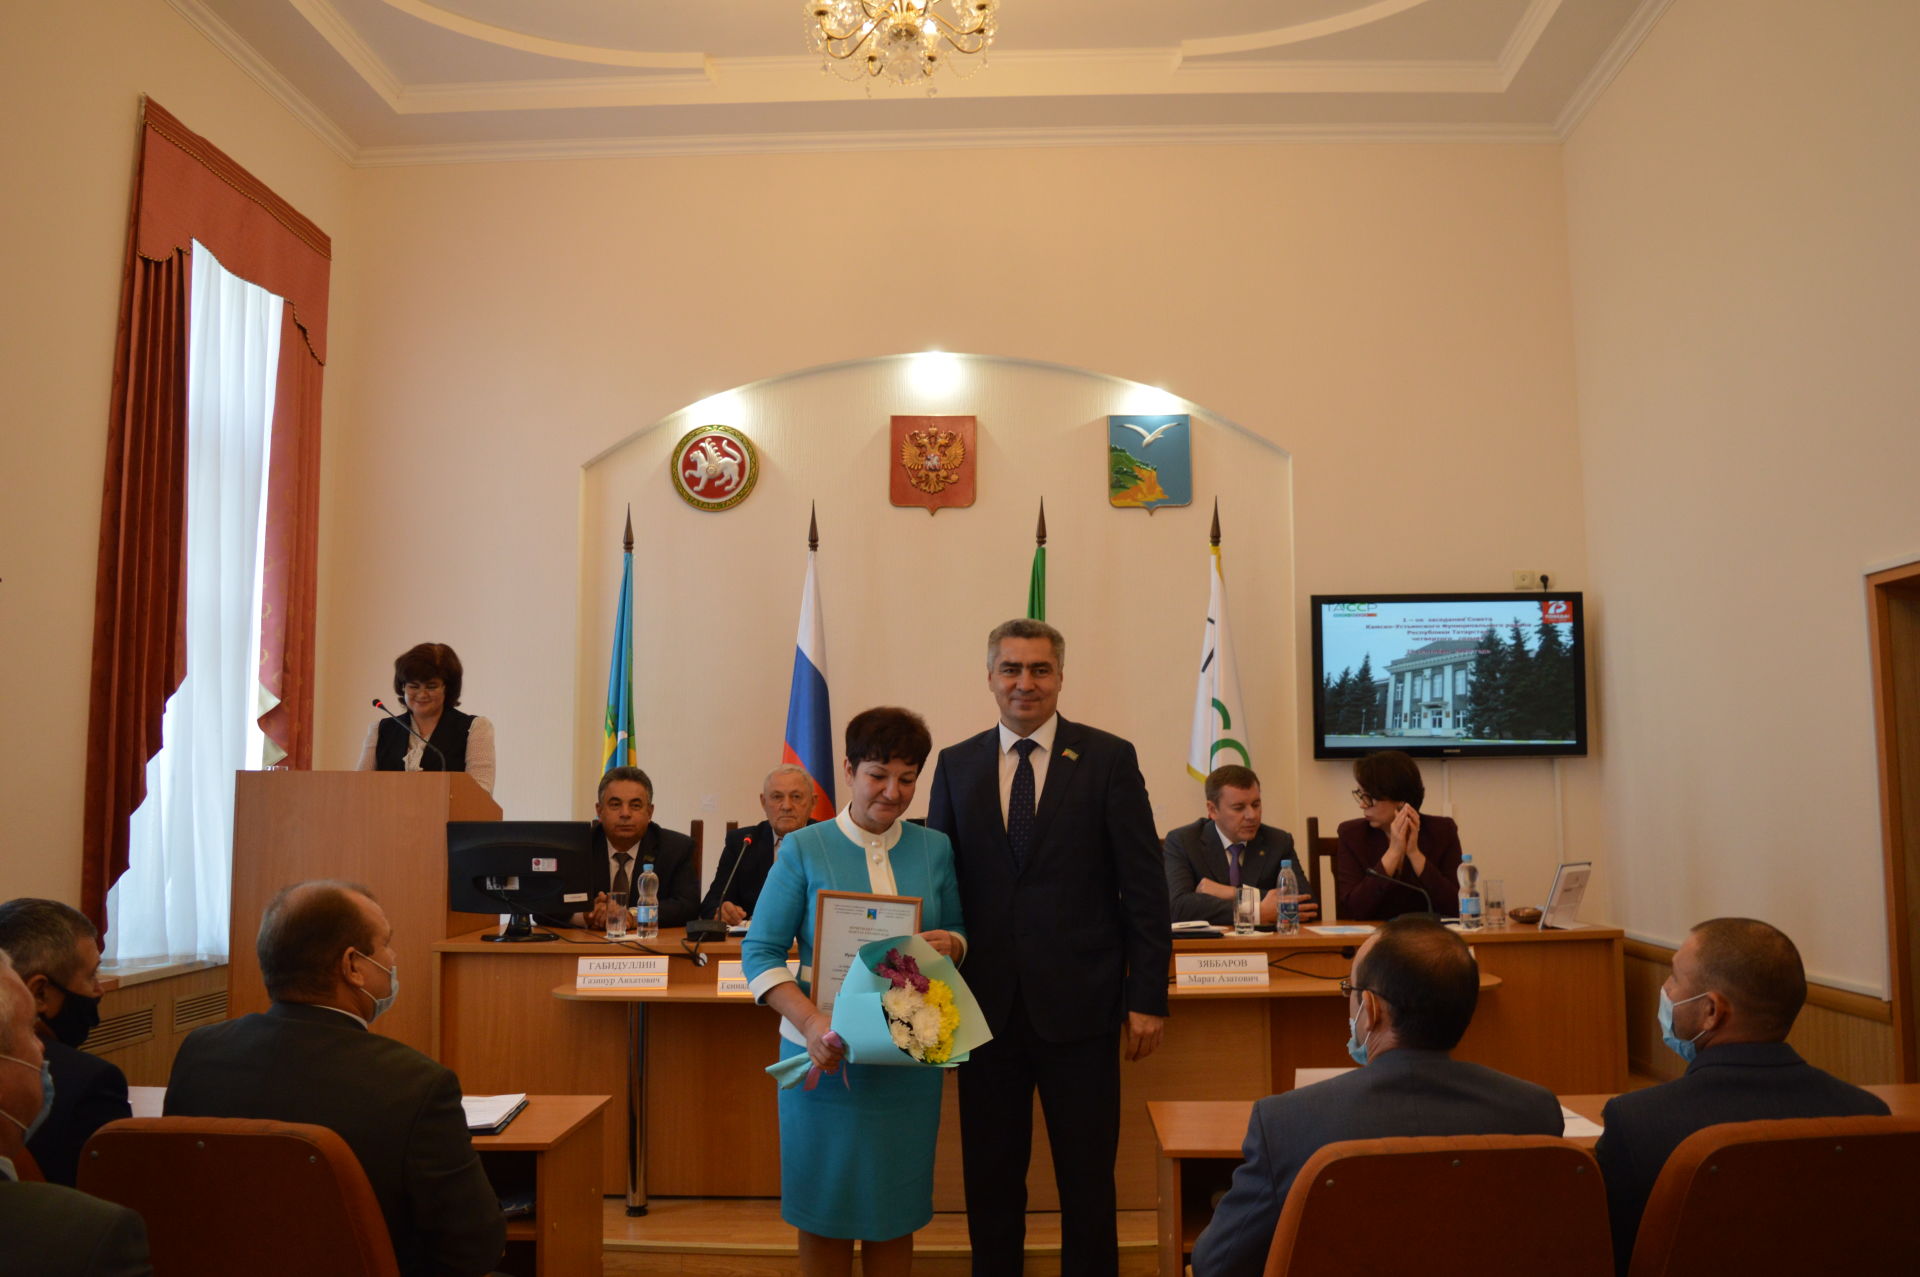 Вновь избранный глава района вручил почётные грамоты депутатам третьего созыва (Фоторепортаж)